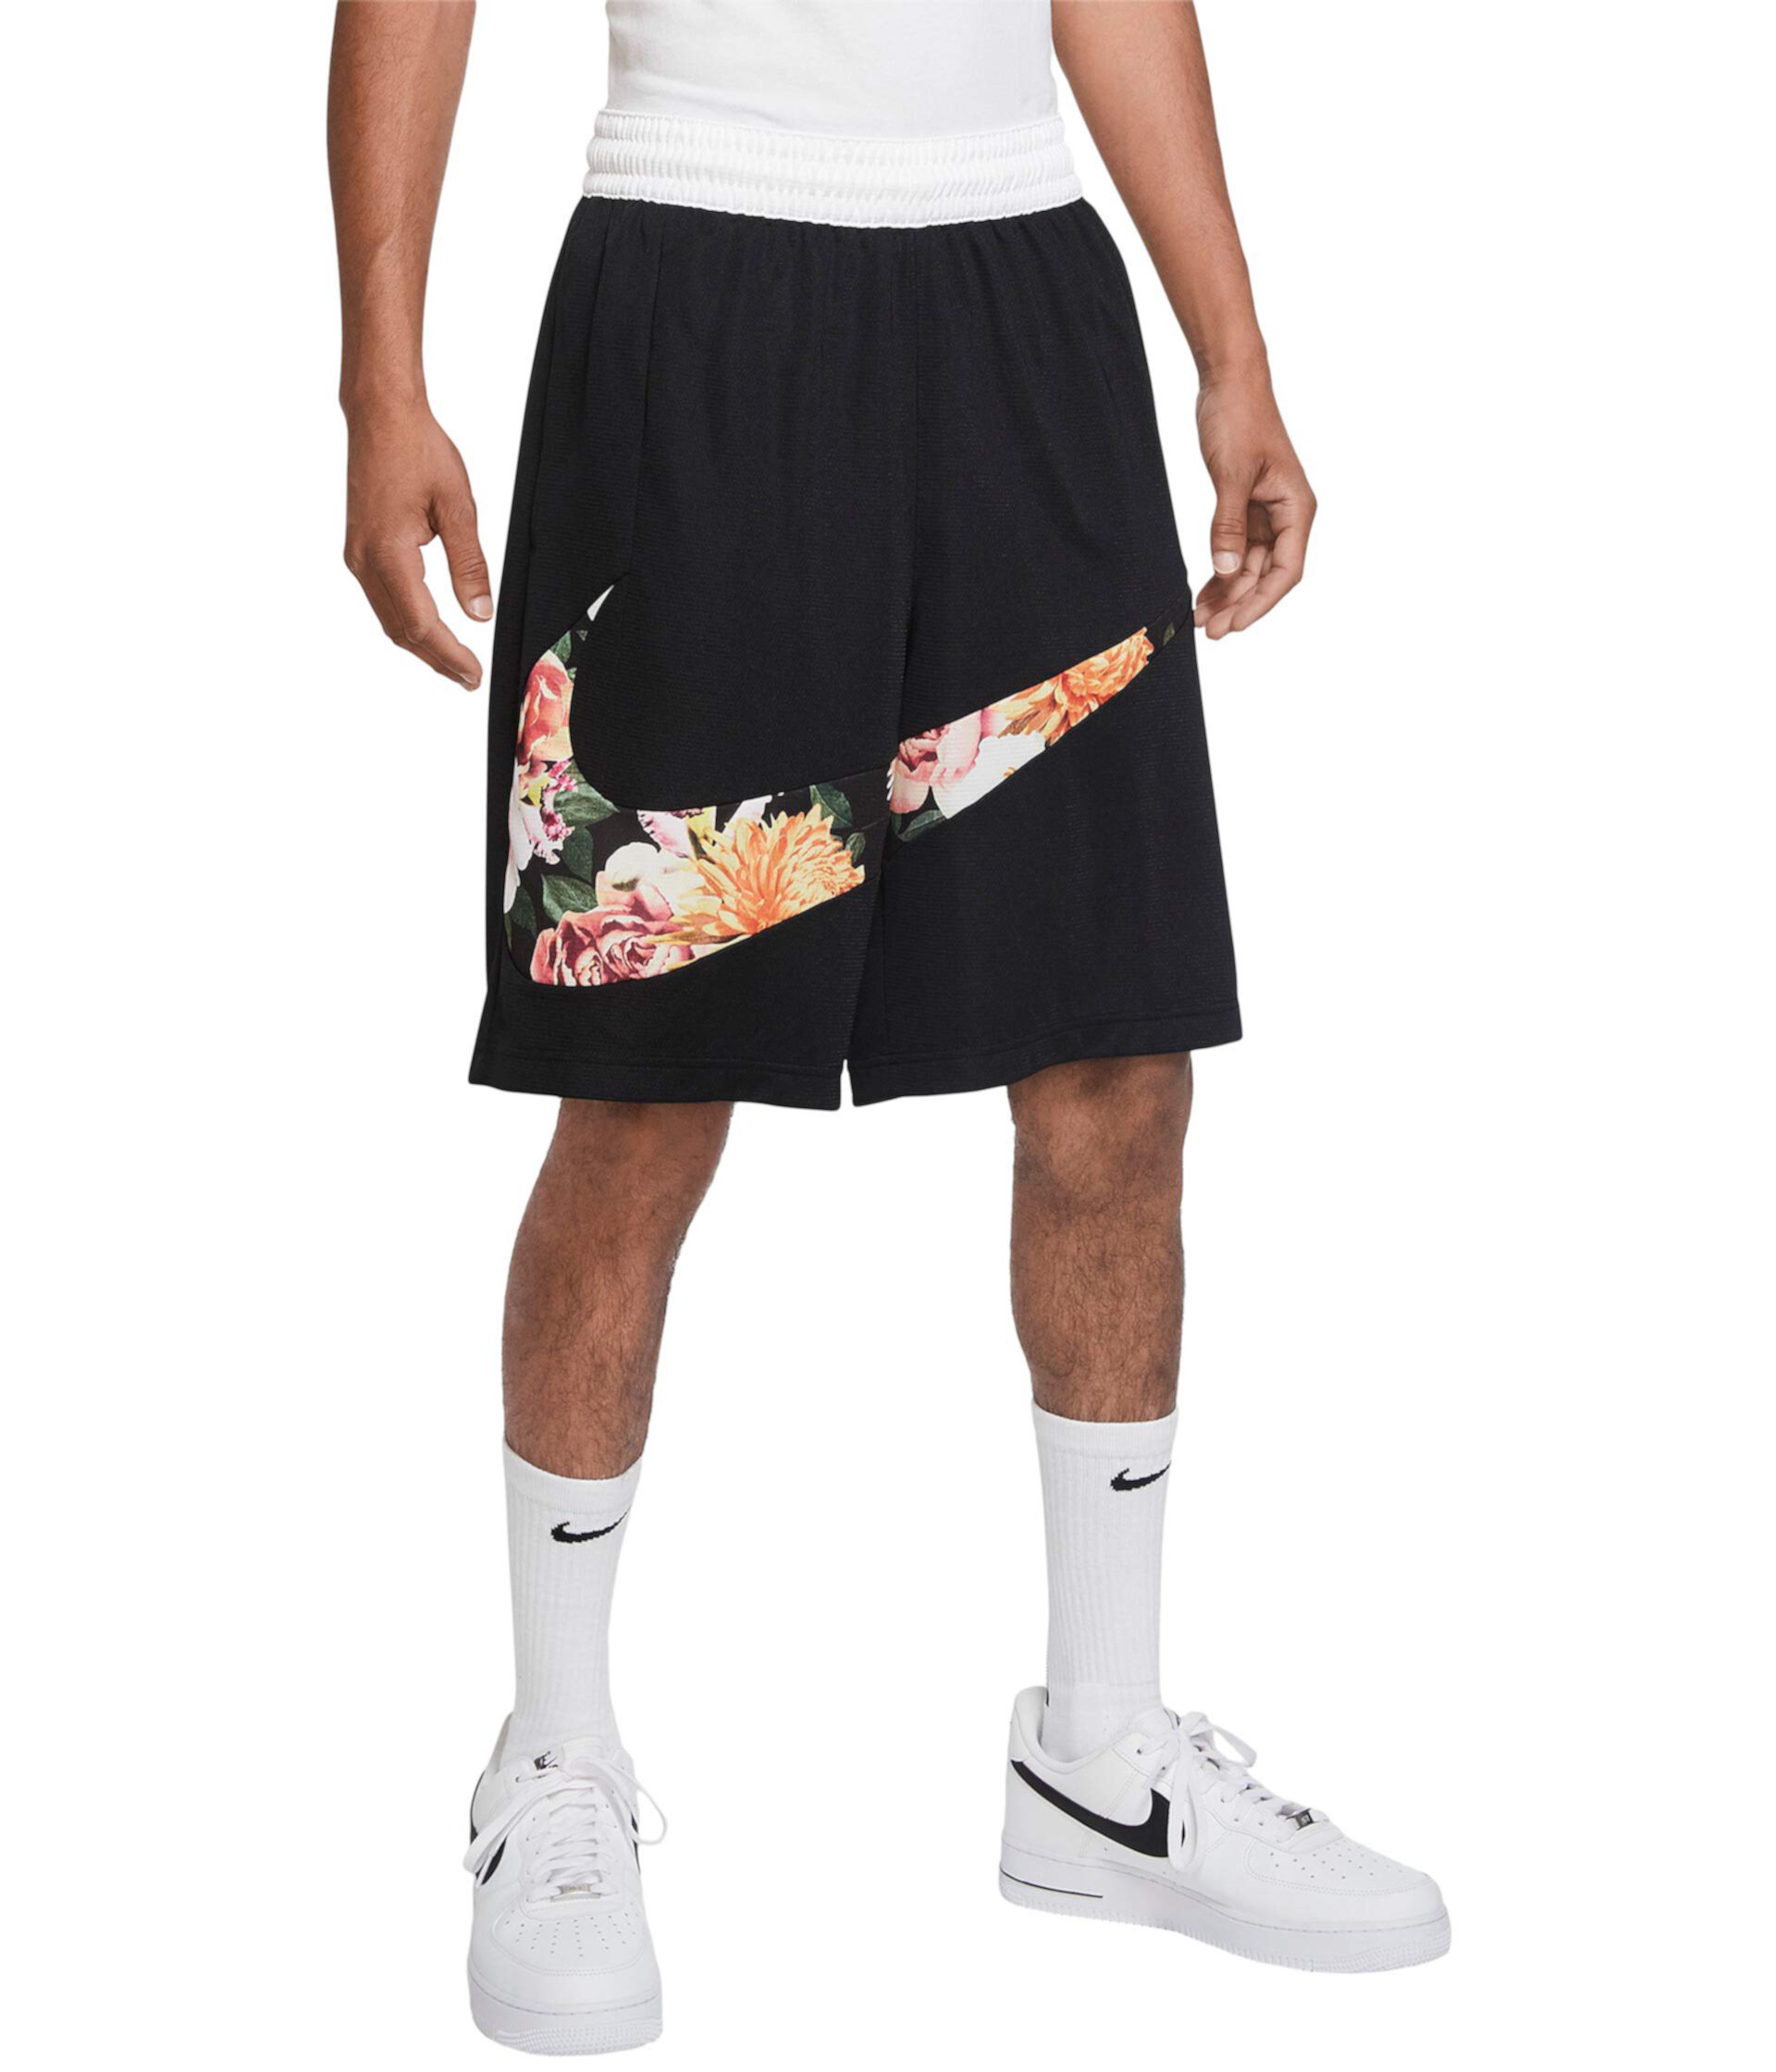 Шорты HBR с цветочным принтом Nike